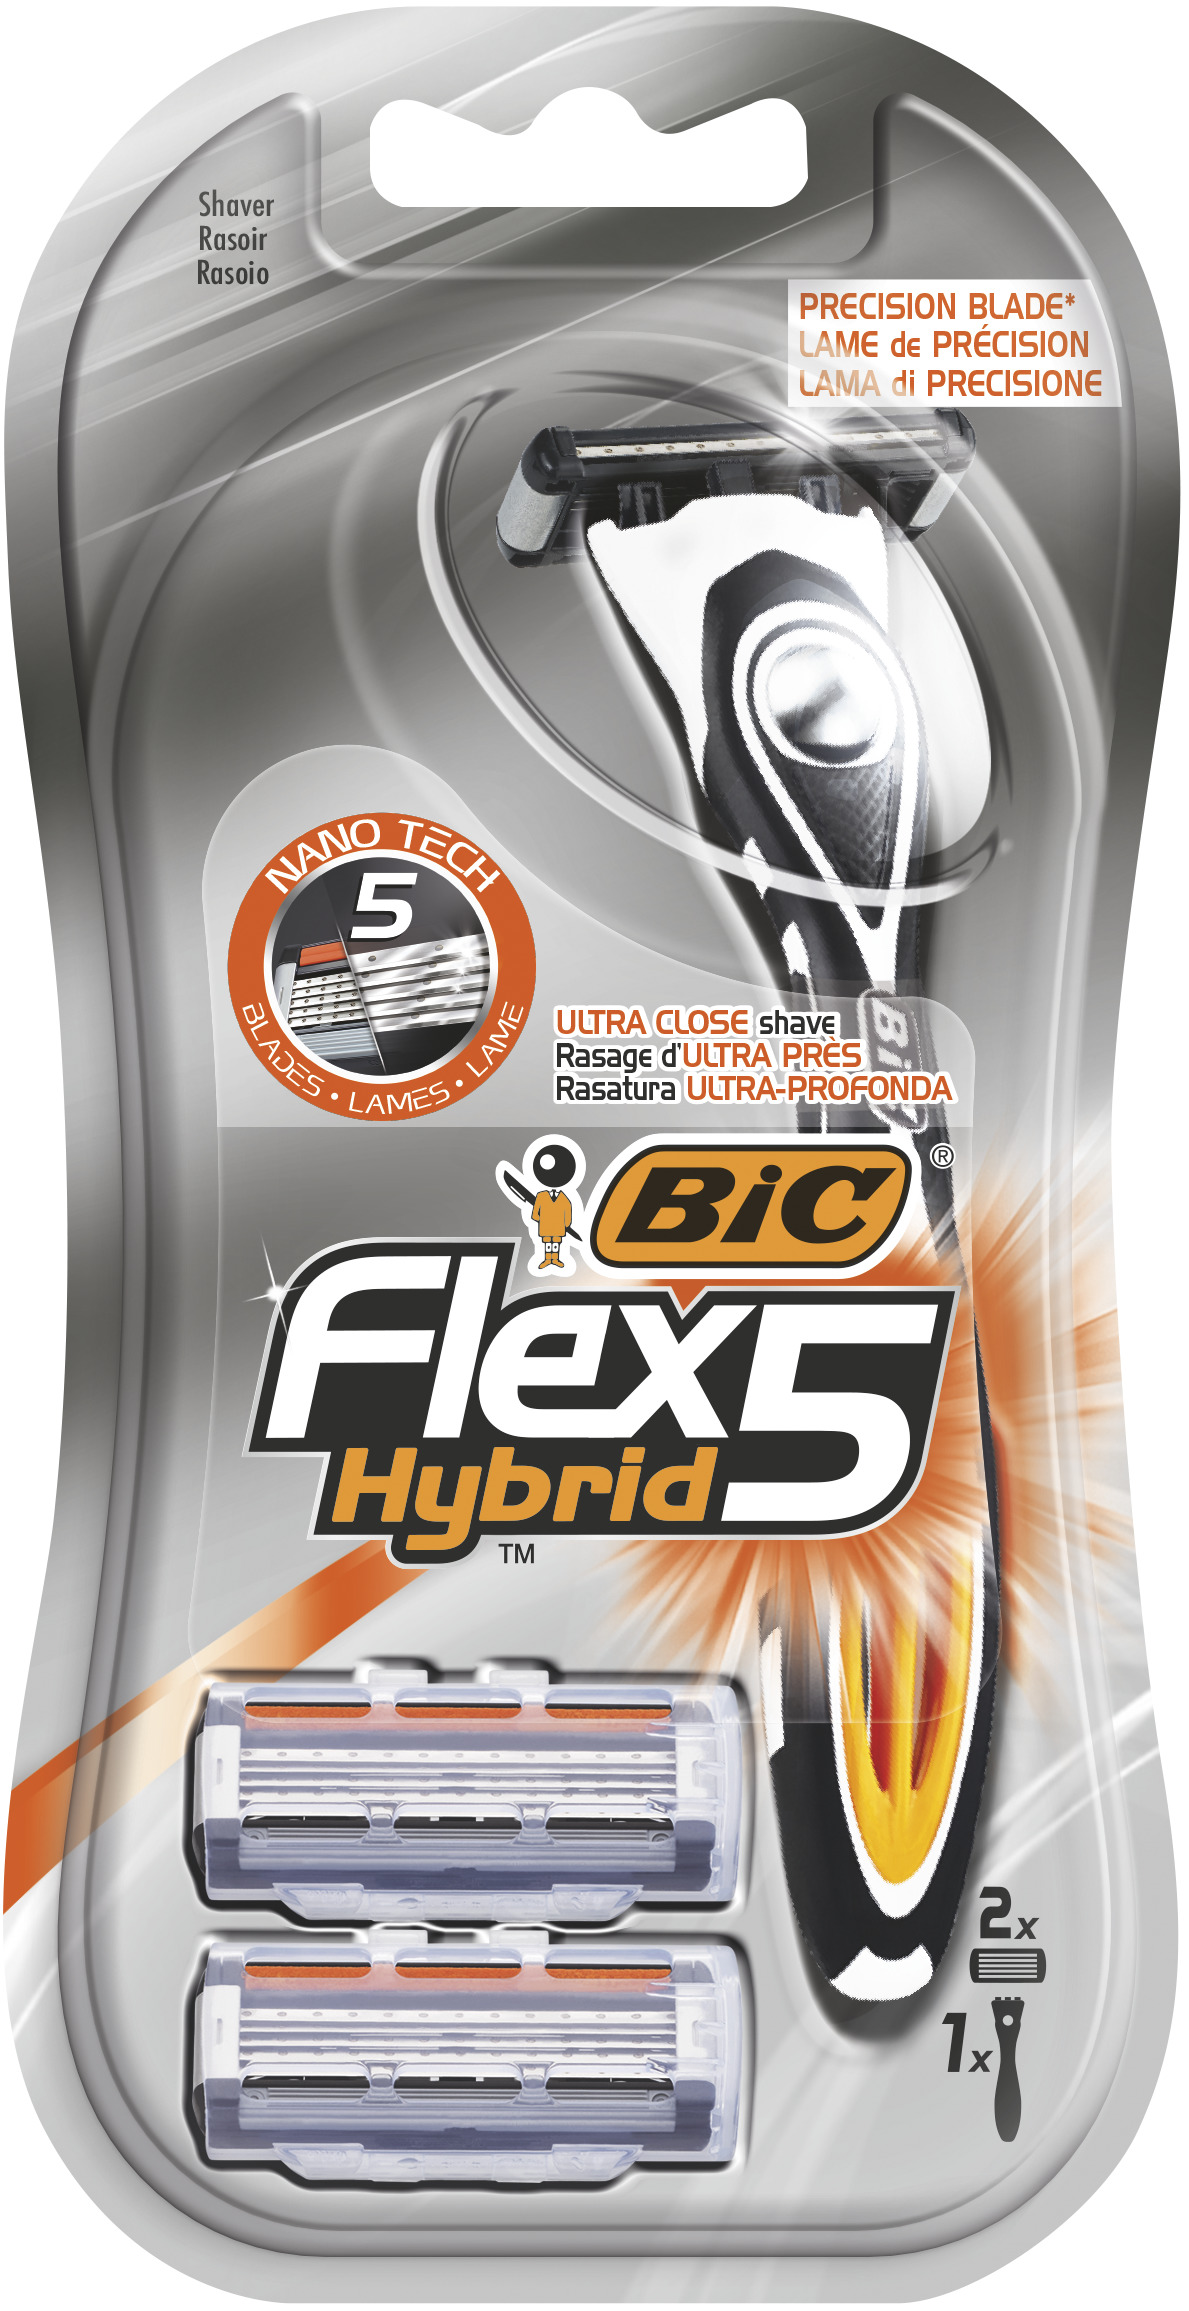 Станок для бритья BIC Flex 5 Hybrid + 2 кассеты